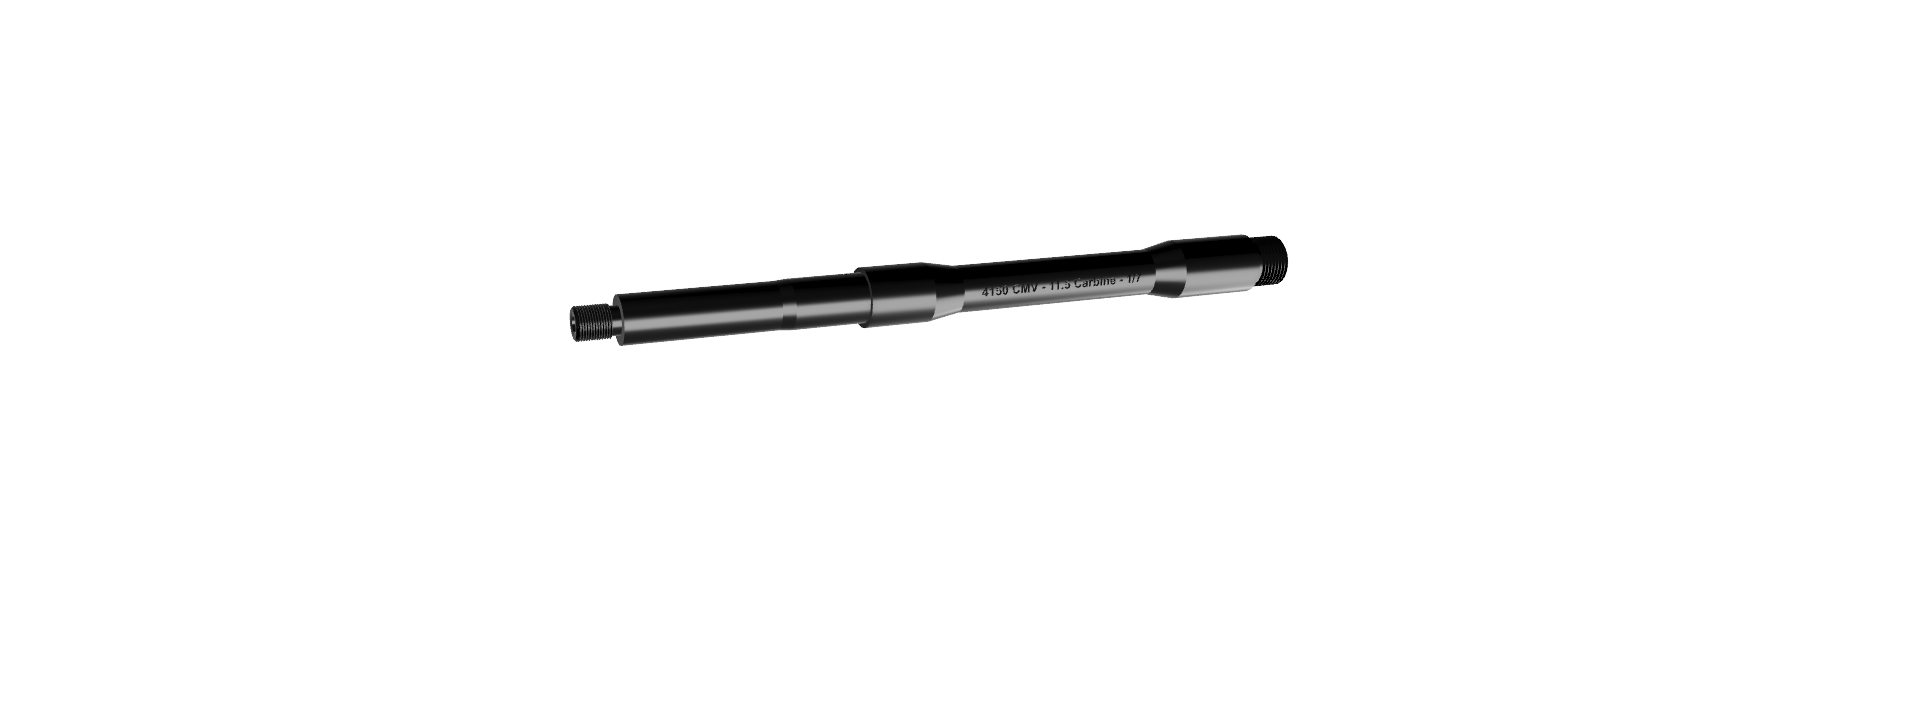 10.5" 5.56 USGI Profile Carbine AR 15 Barrel - Hughes Ballistics